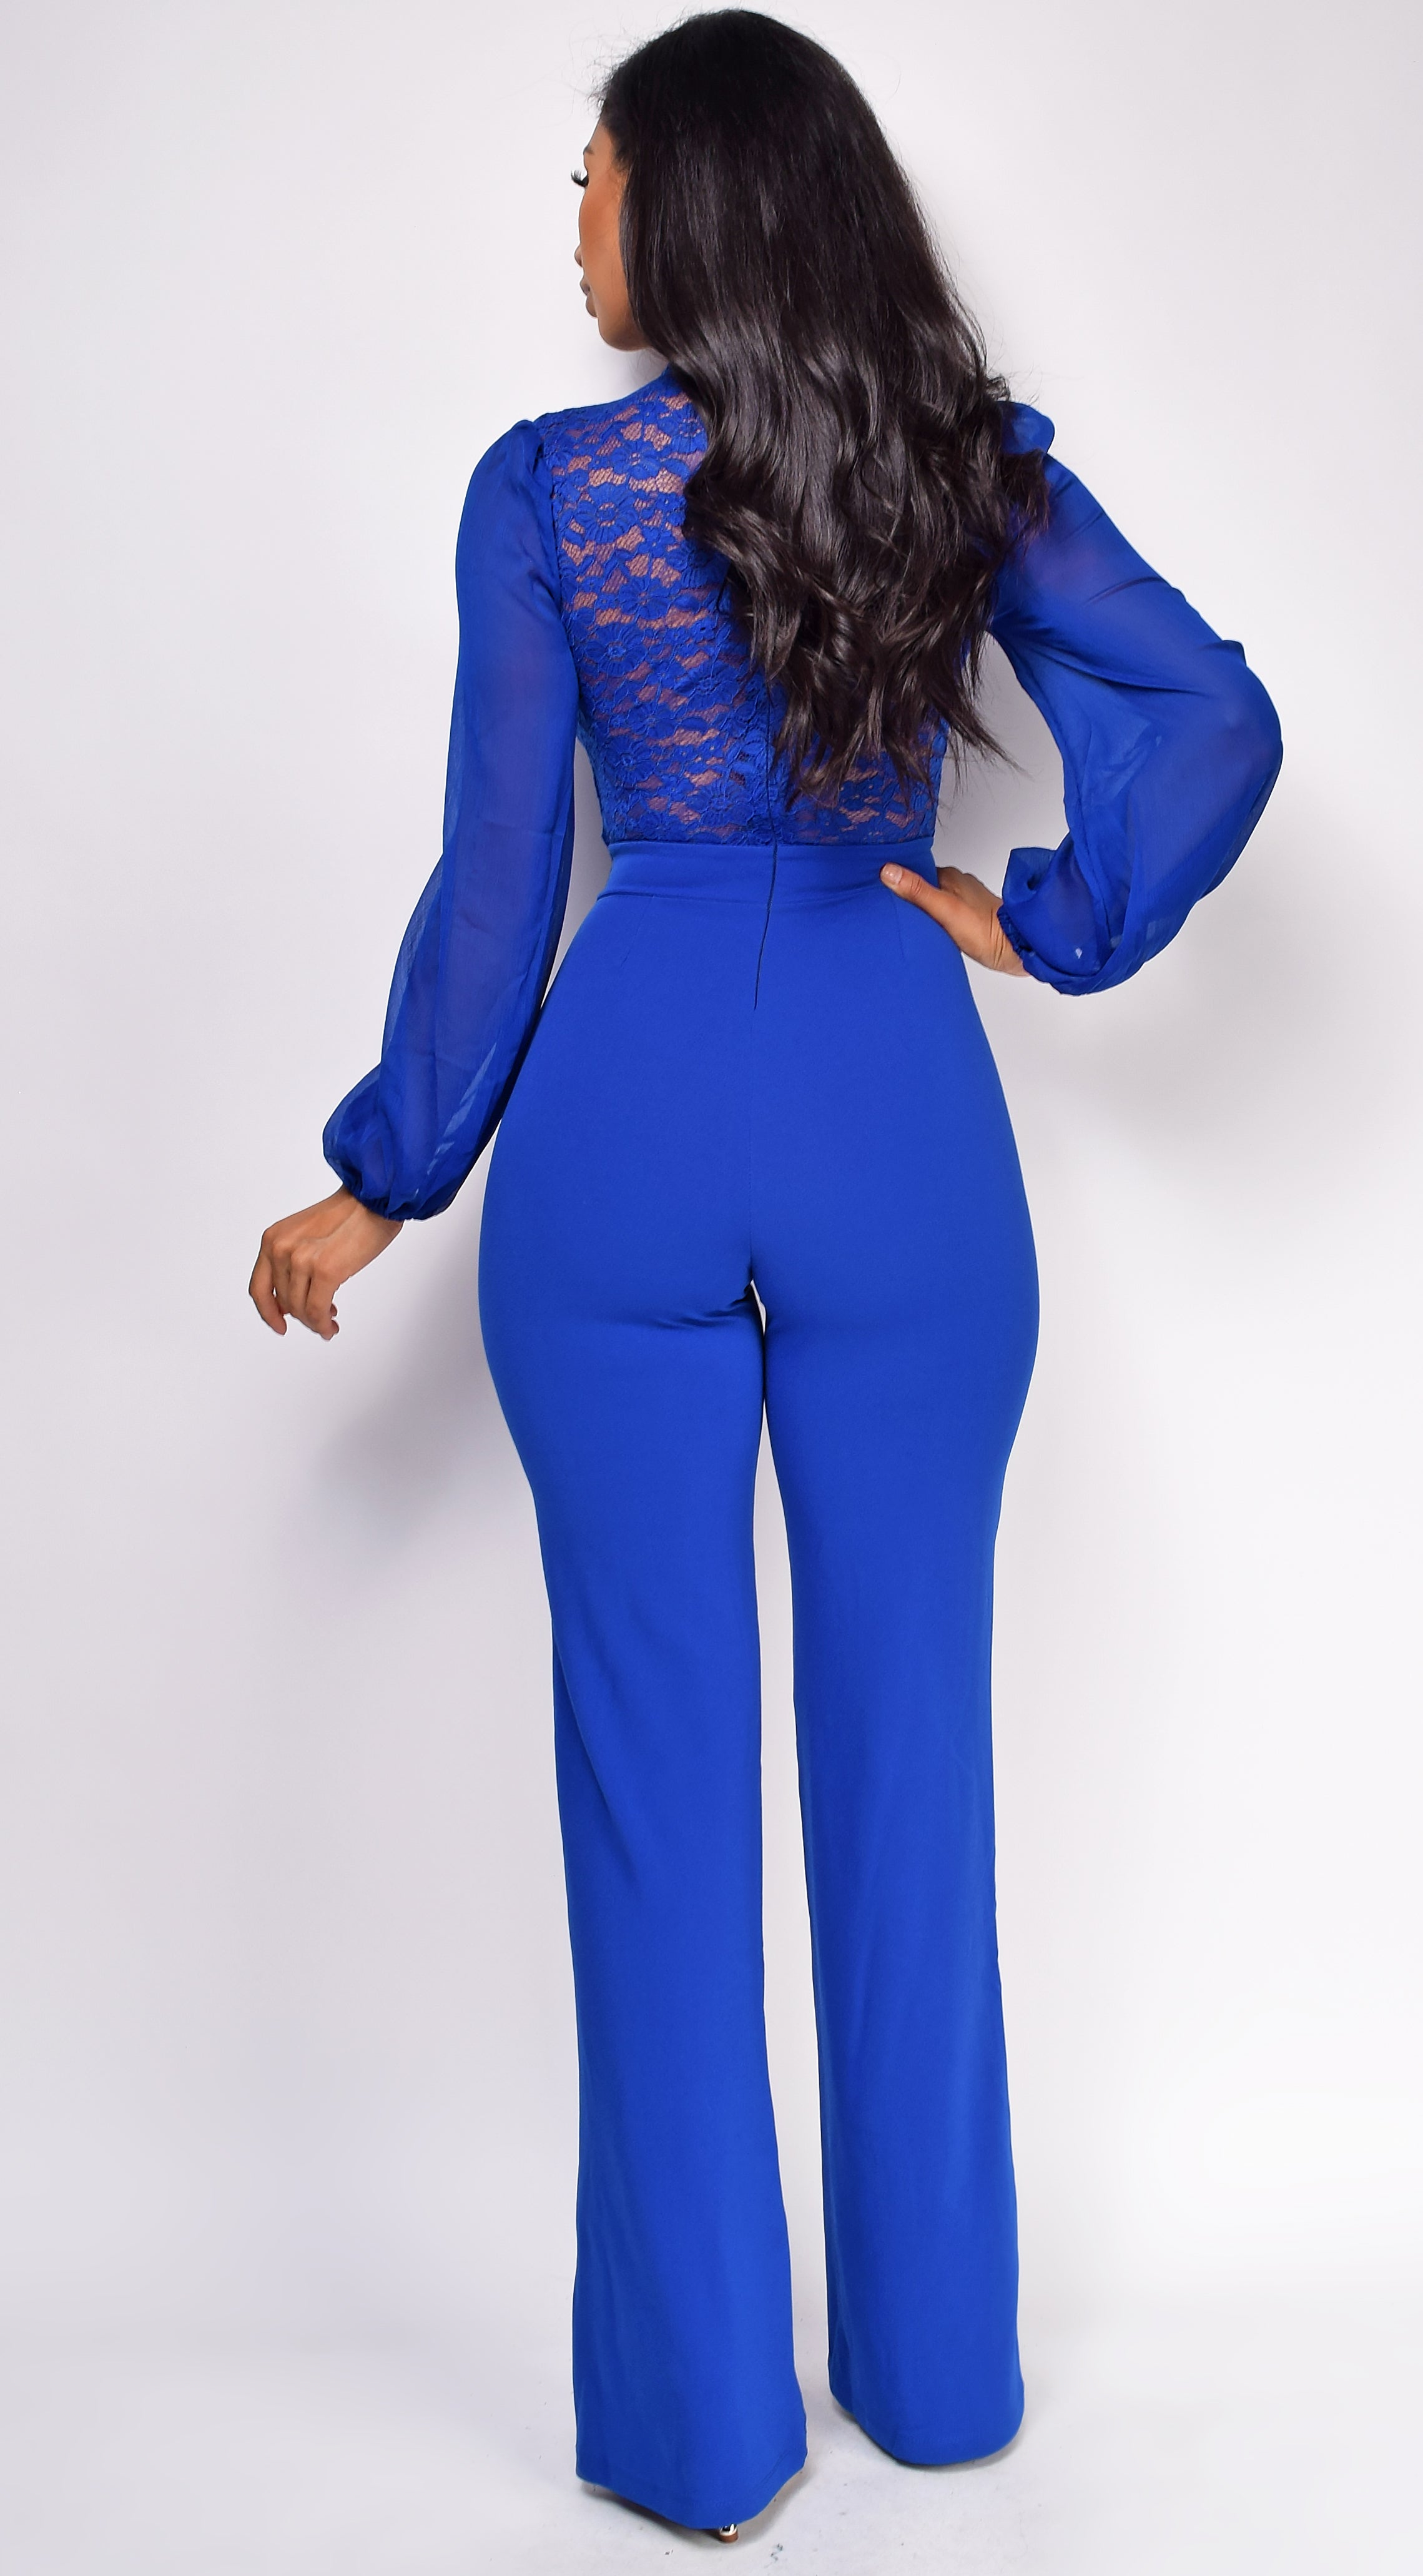 Nerine Crochet Lace Mesh Jumpsuit - Royal Blue